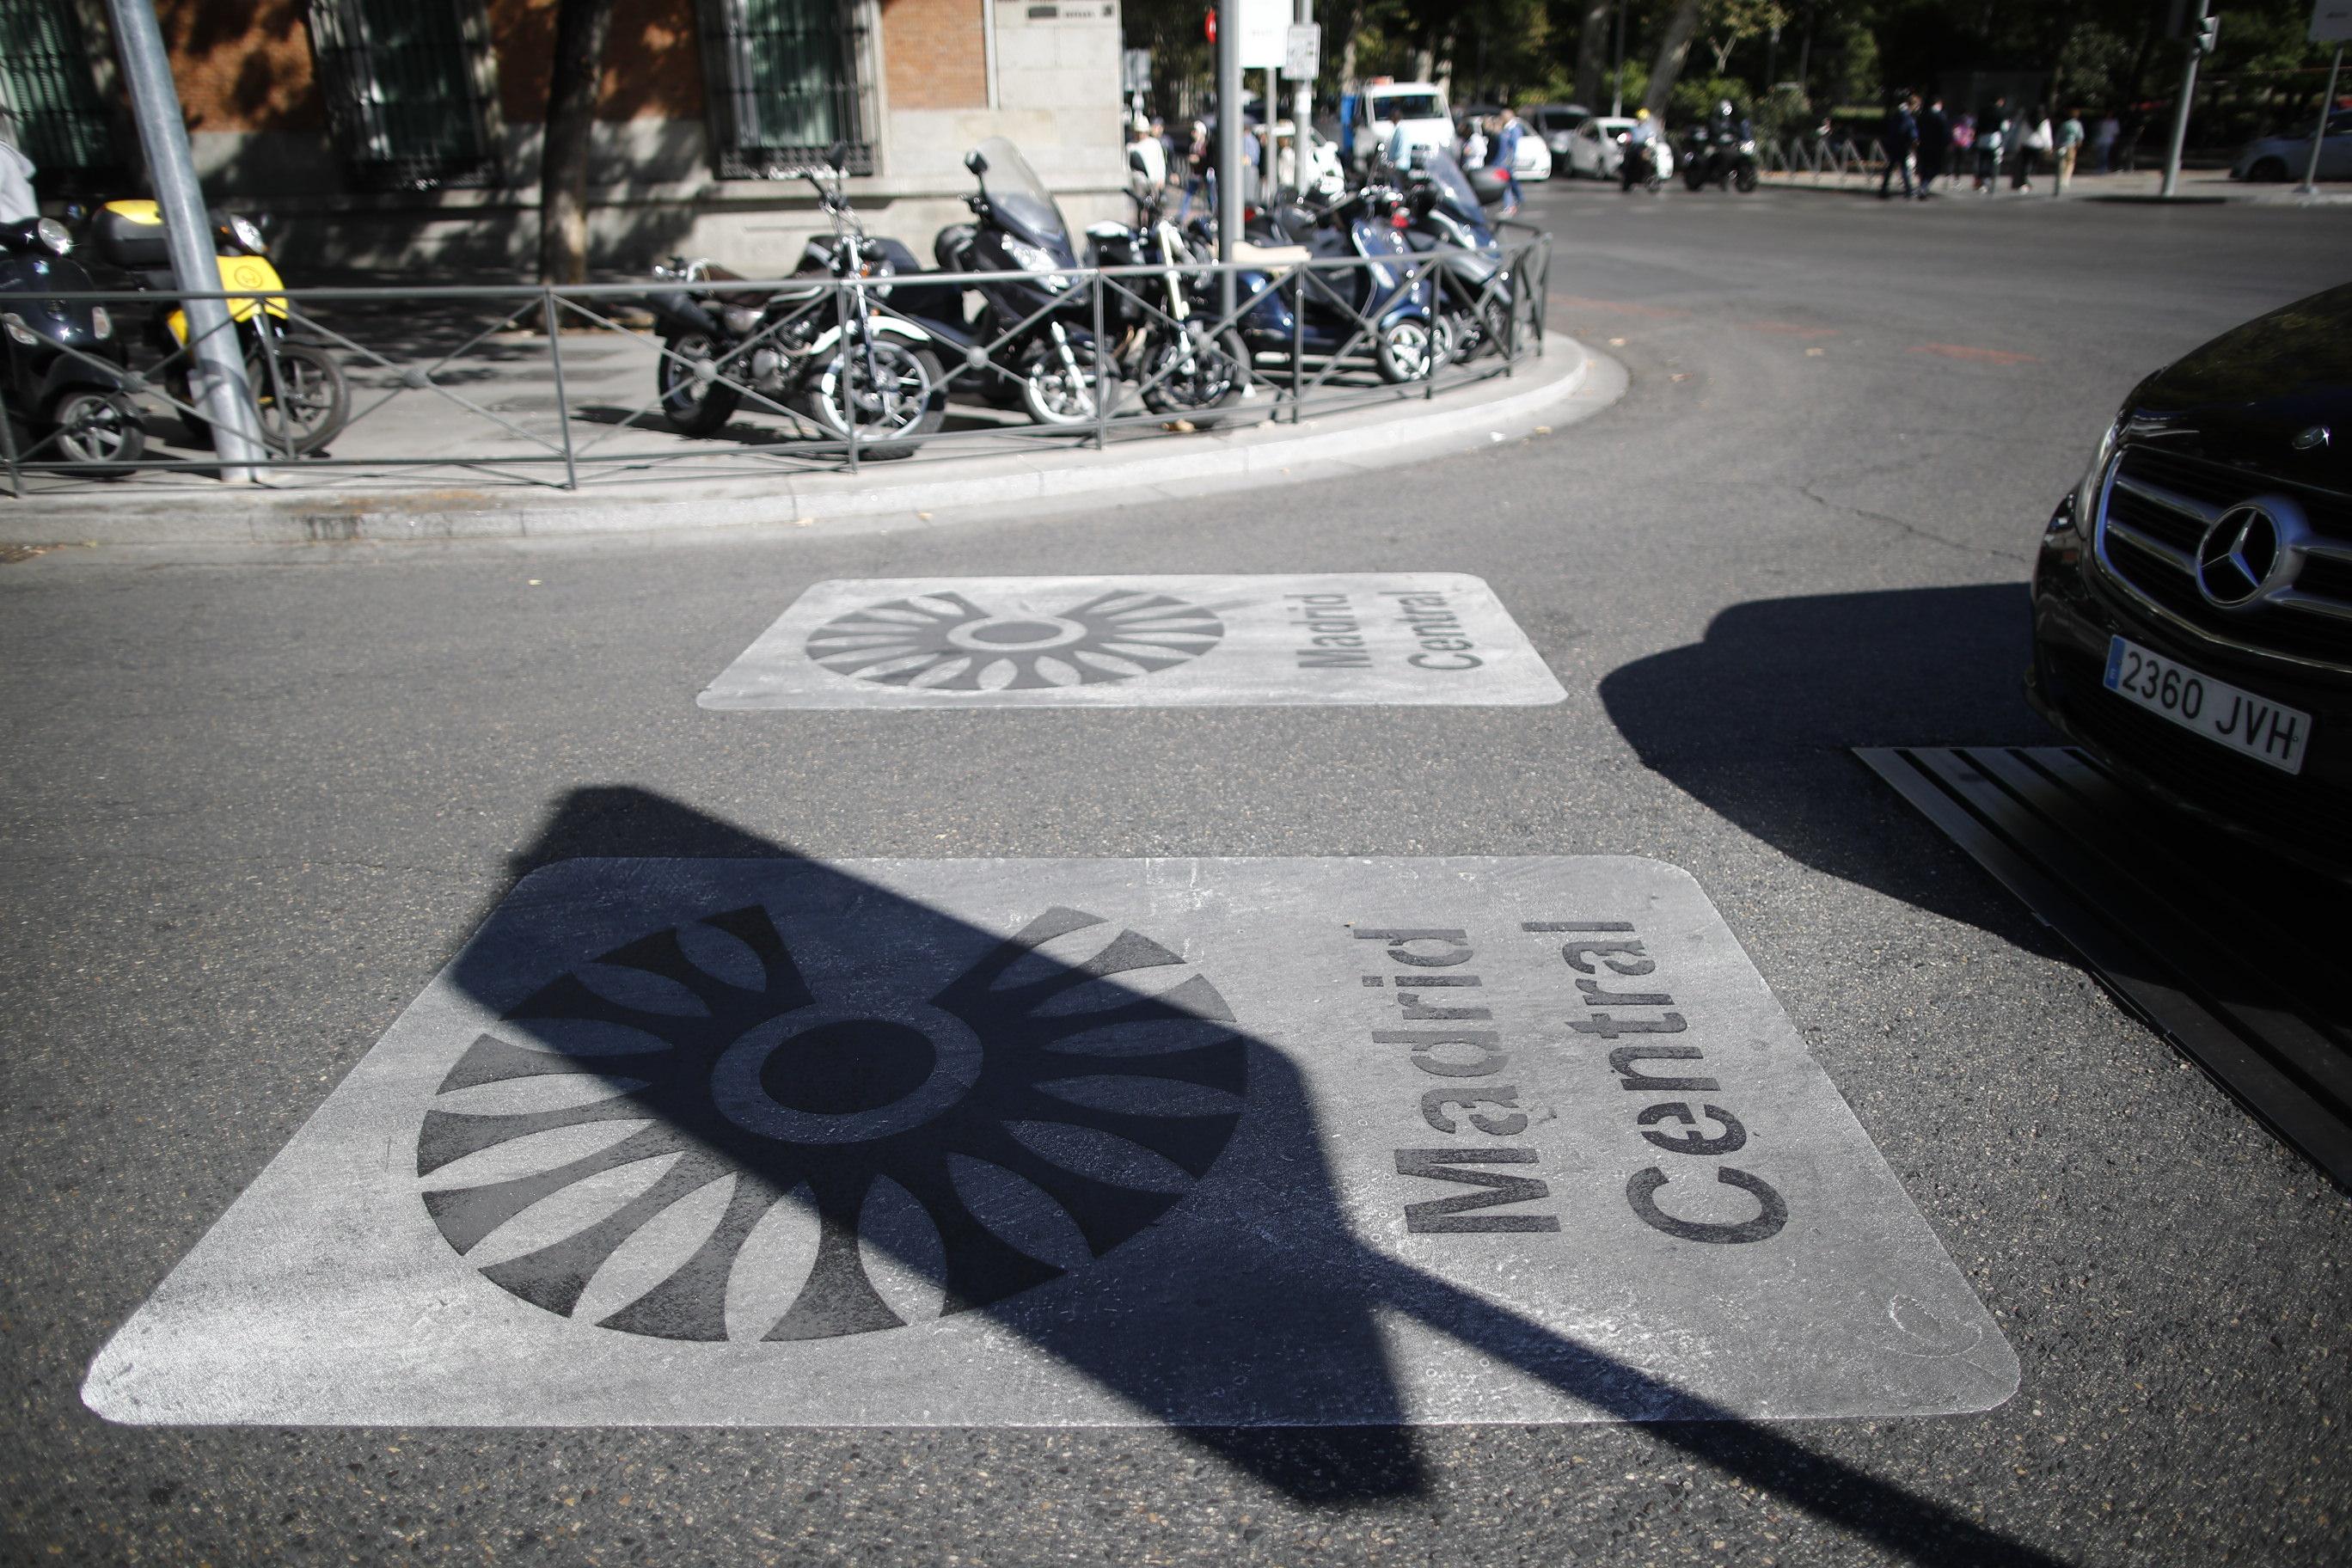  Señales en el suelo de Madrid Central que indican restricciones al tráfico en el centro de la capital